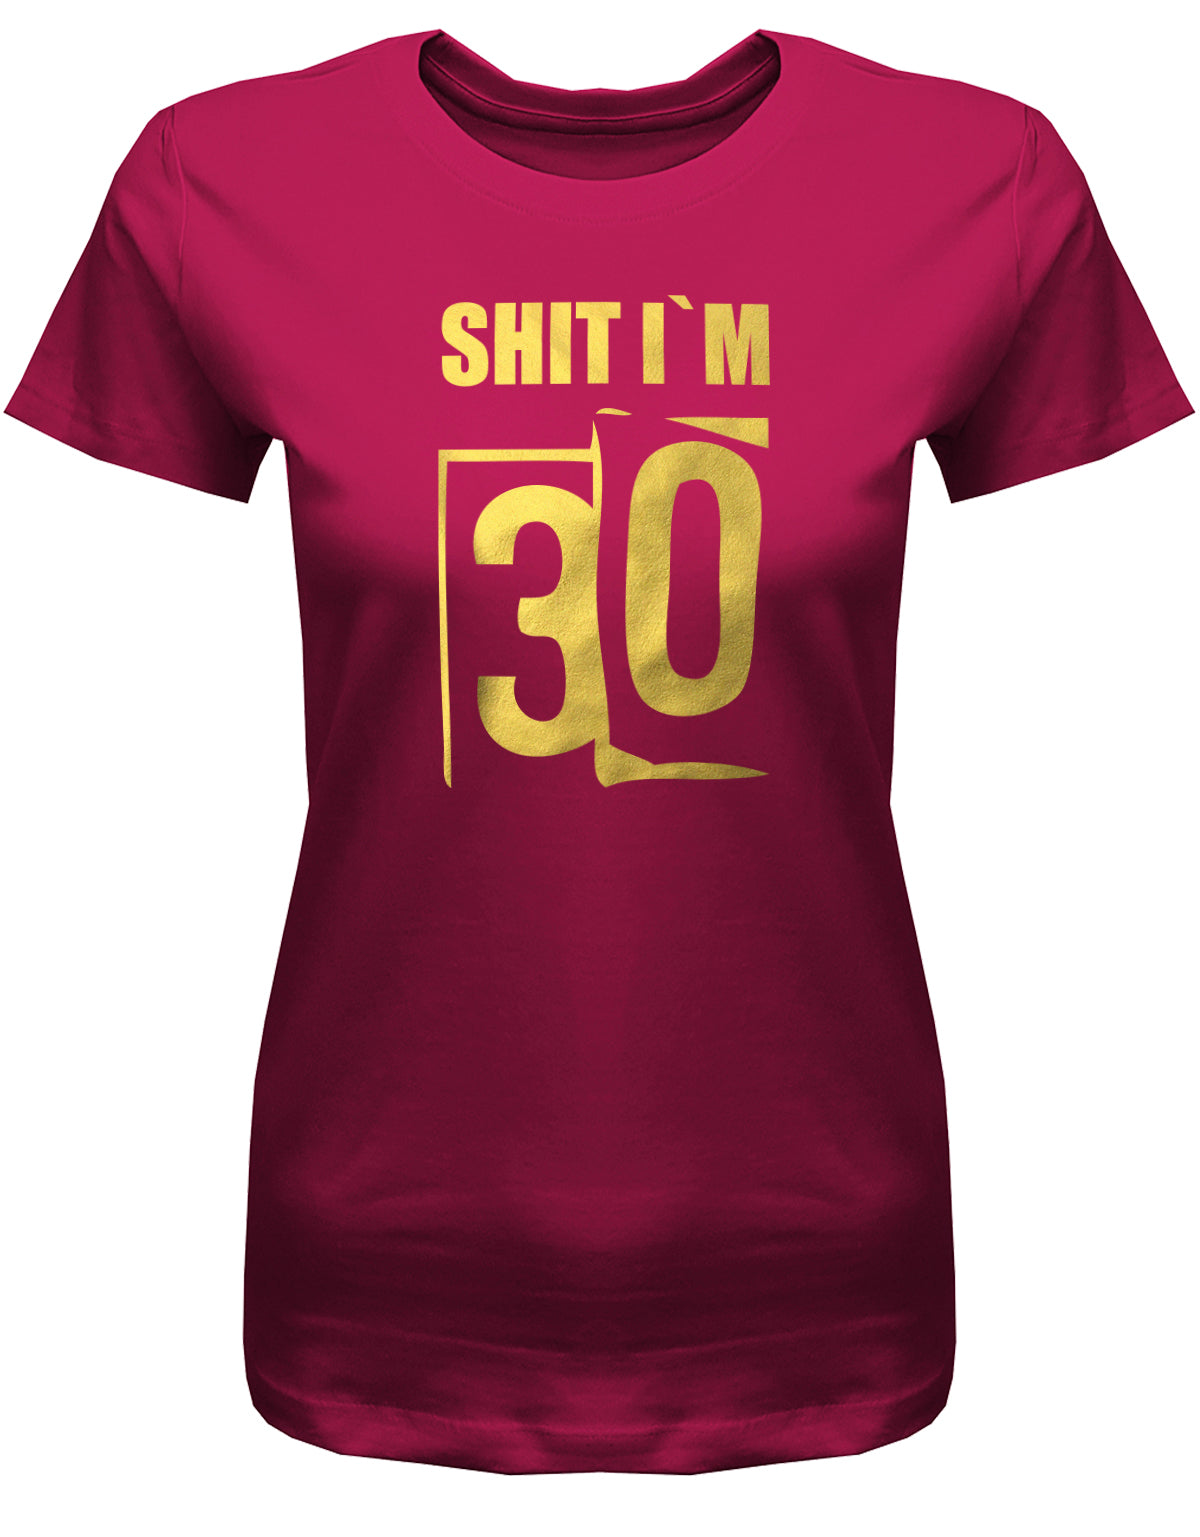 Lustiges T-Shirt zum 30. Geburtstag für die Frau Bedruckt mit: Shit i´m 30. Scheisse ich bin 30. Geschenk zum 30 geburtstag Frau ✓ 1993 geburtstag Frau ✓ 30 Geburtstag tshirt ✓ shirt geburtstag 30 Sorbet